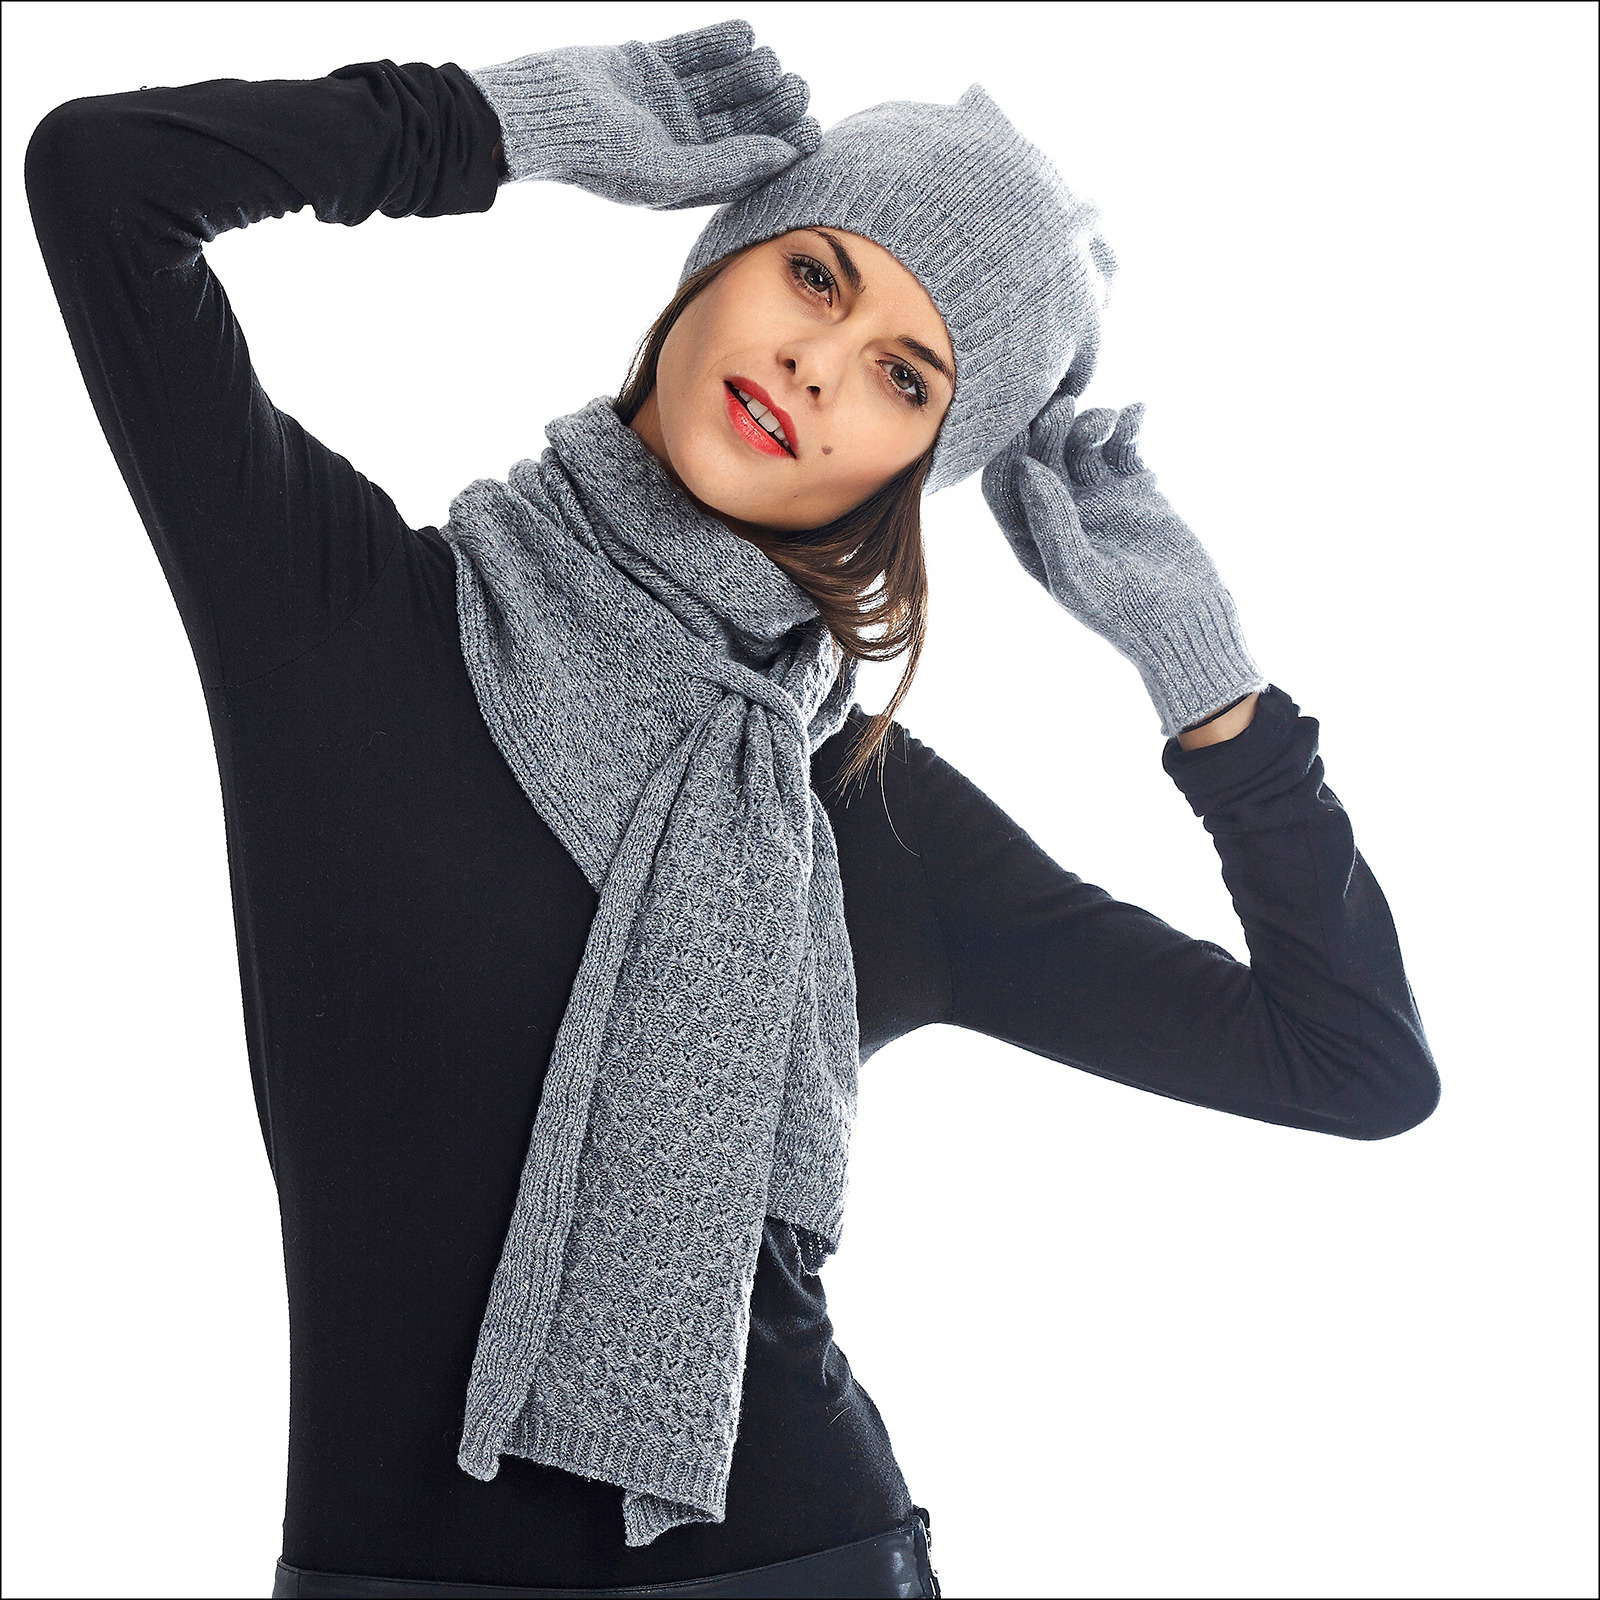 bonnet-echarpe-gants-cachemire-femme - Photo de total LOOK - Les